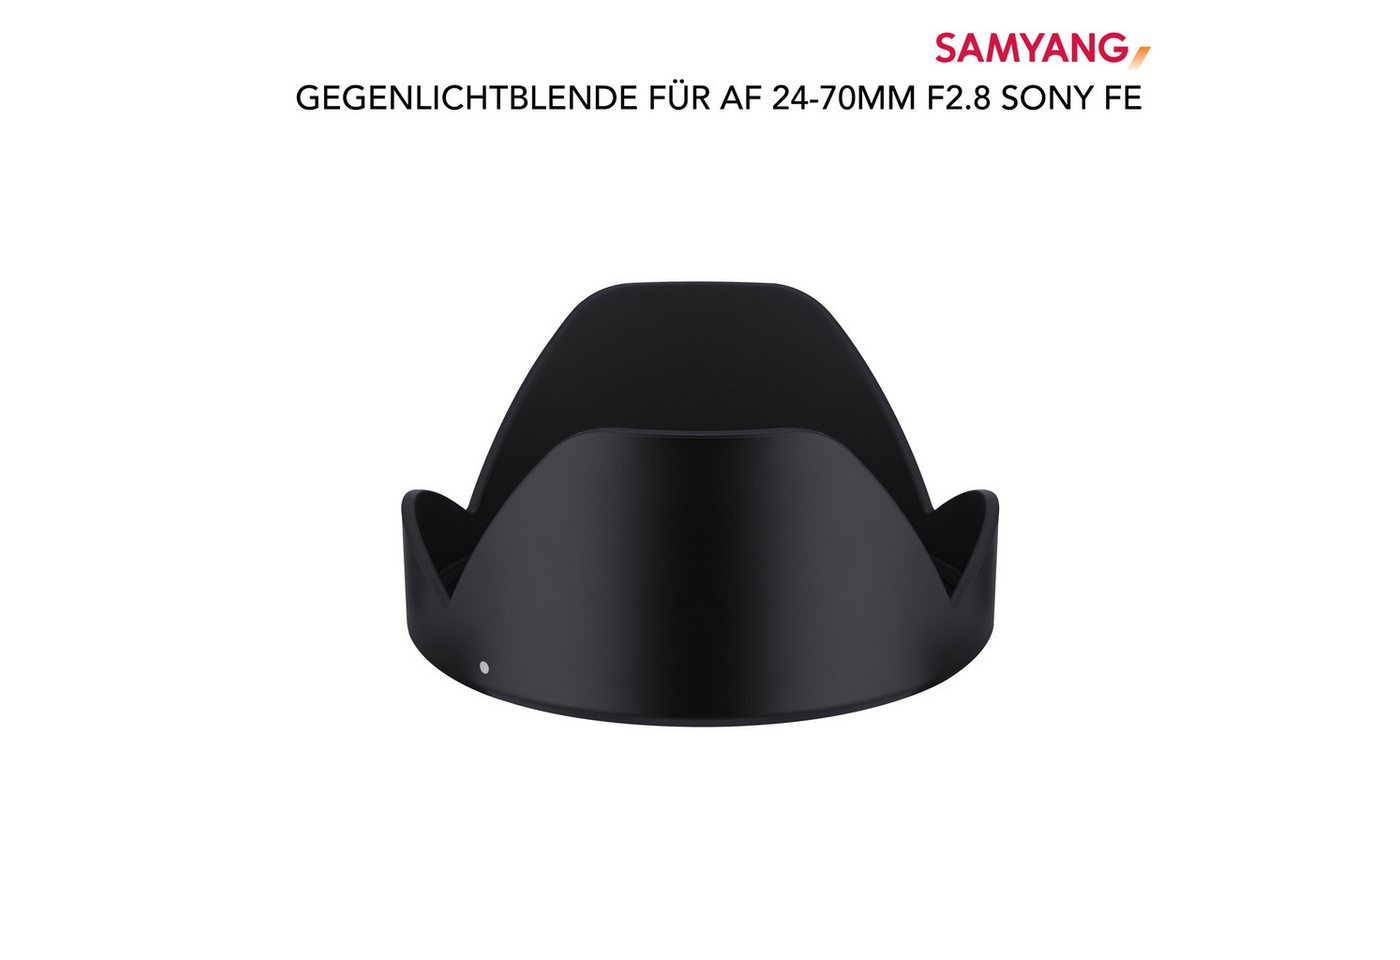 Samyang Gegenlichtblende für AF 24-70mm F2,8 Sony FE Gegenlichtblende von Samyang